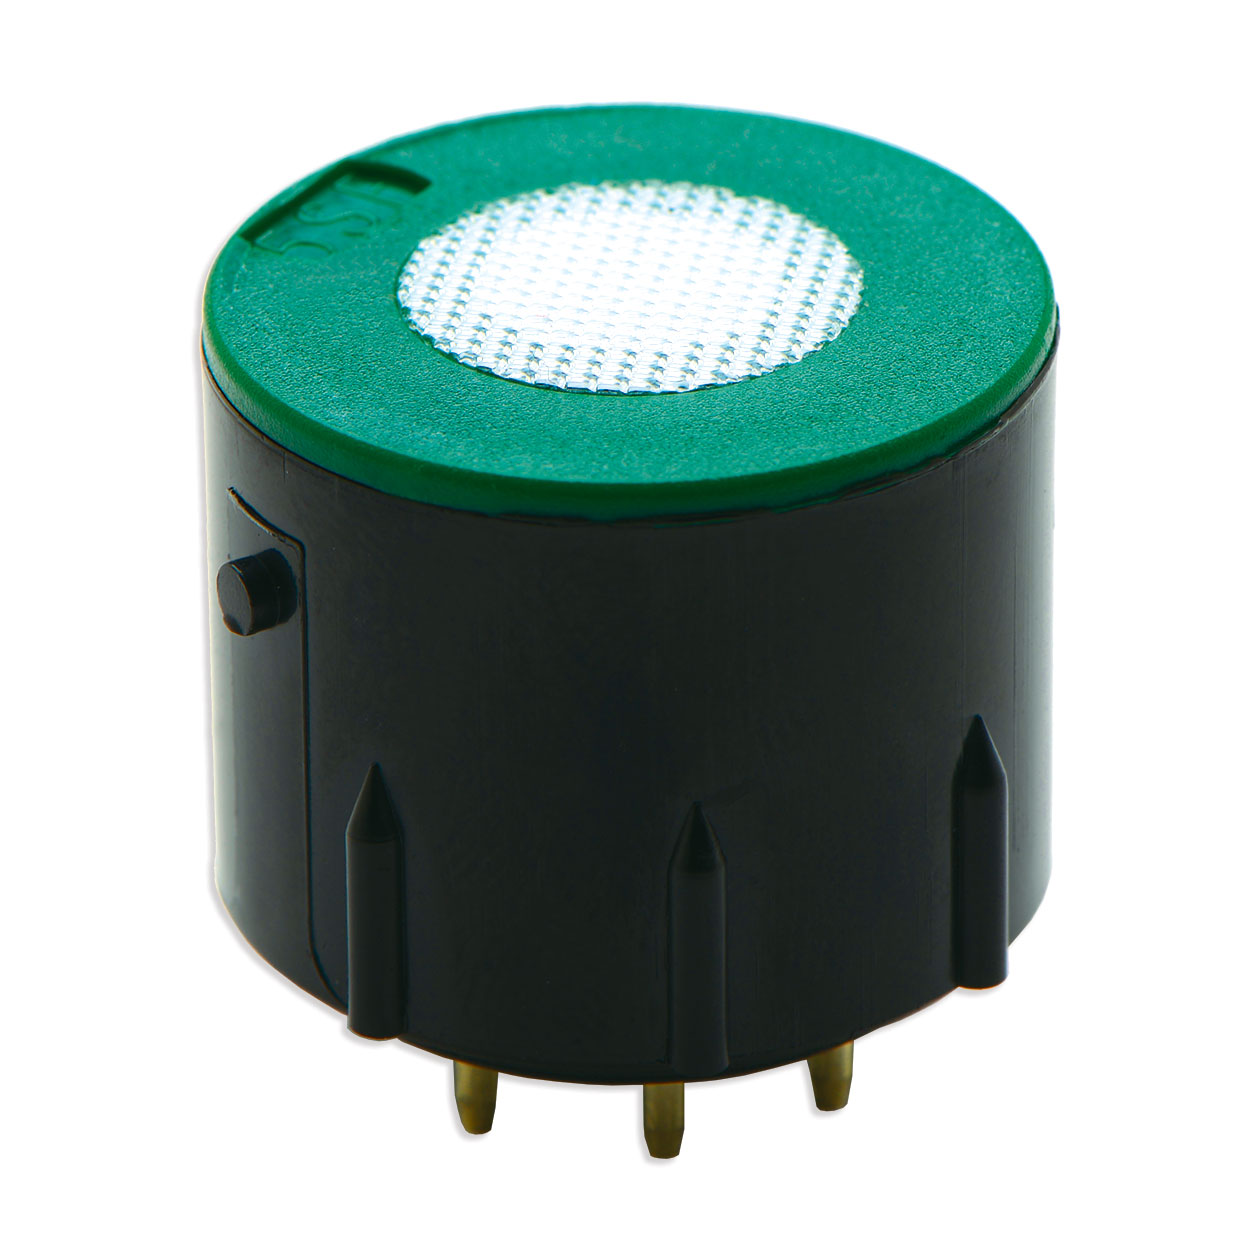 CO for all PCA 3 Low Bacharach 0024-0789 Replacement Carbon Monoxide Sensor 